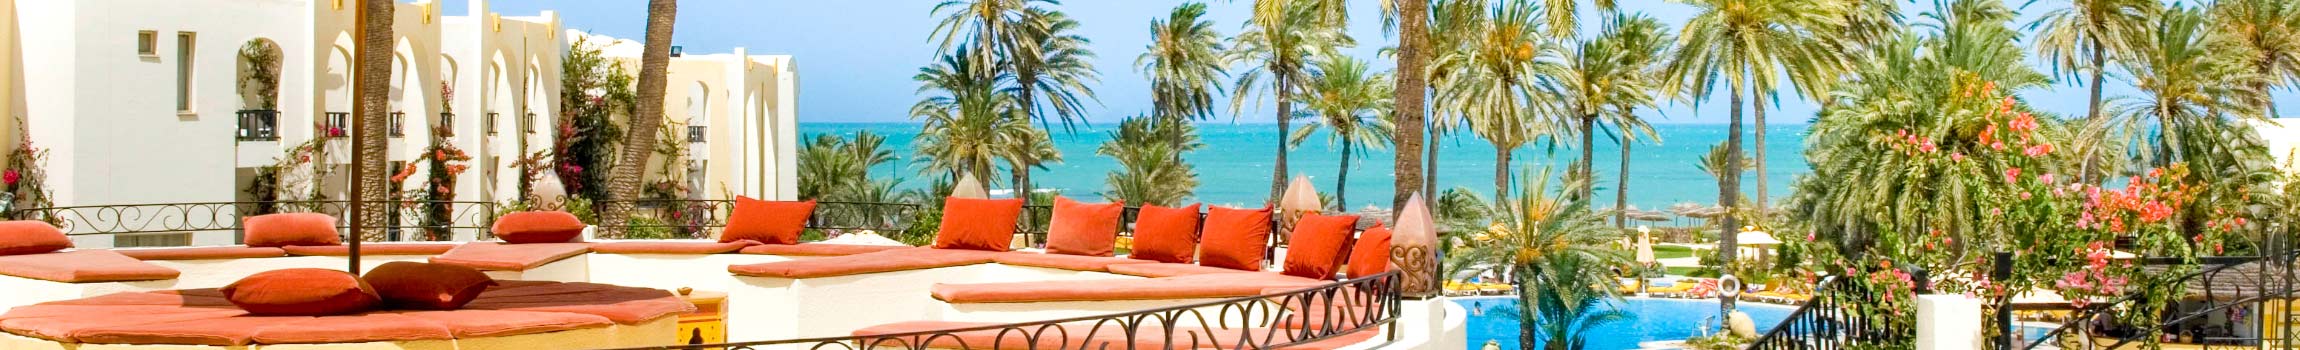 Hotel-Terrasse mit Ausblick auf den daran liegenden feinsandigen Strand